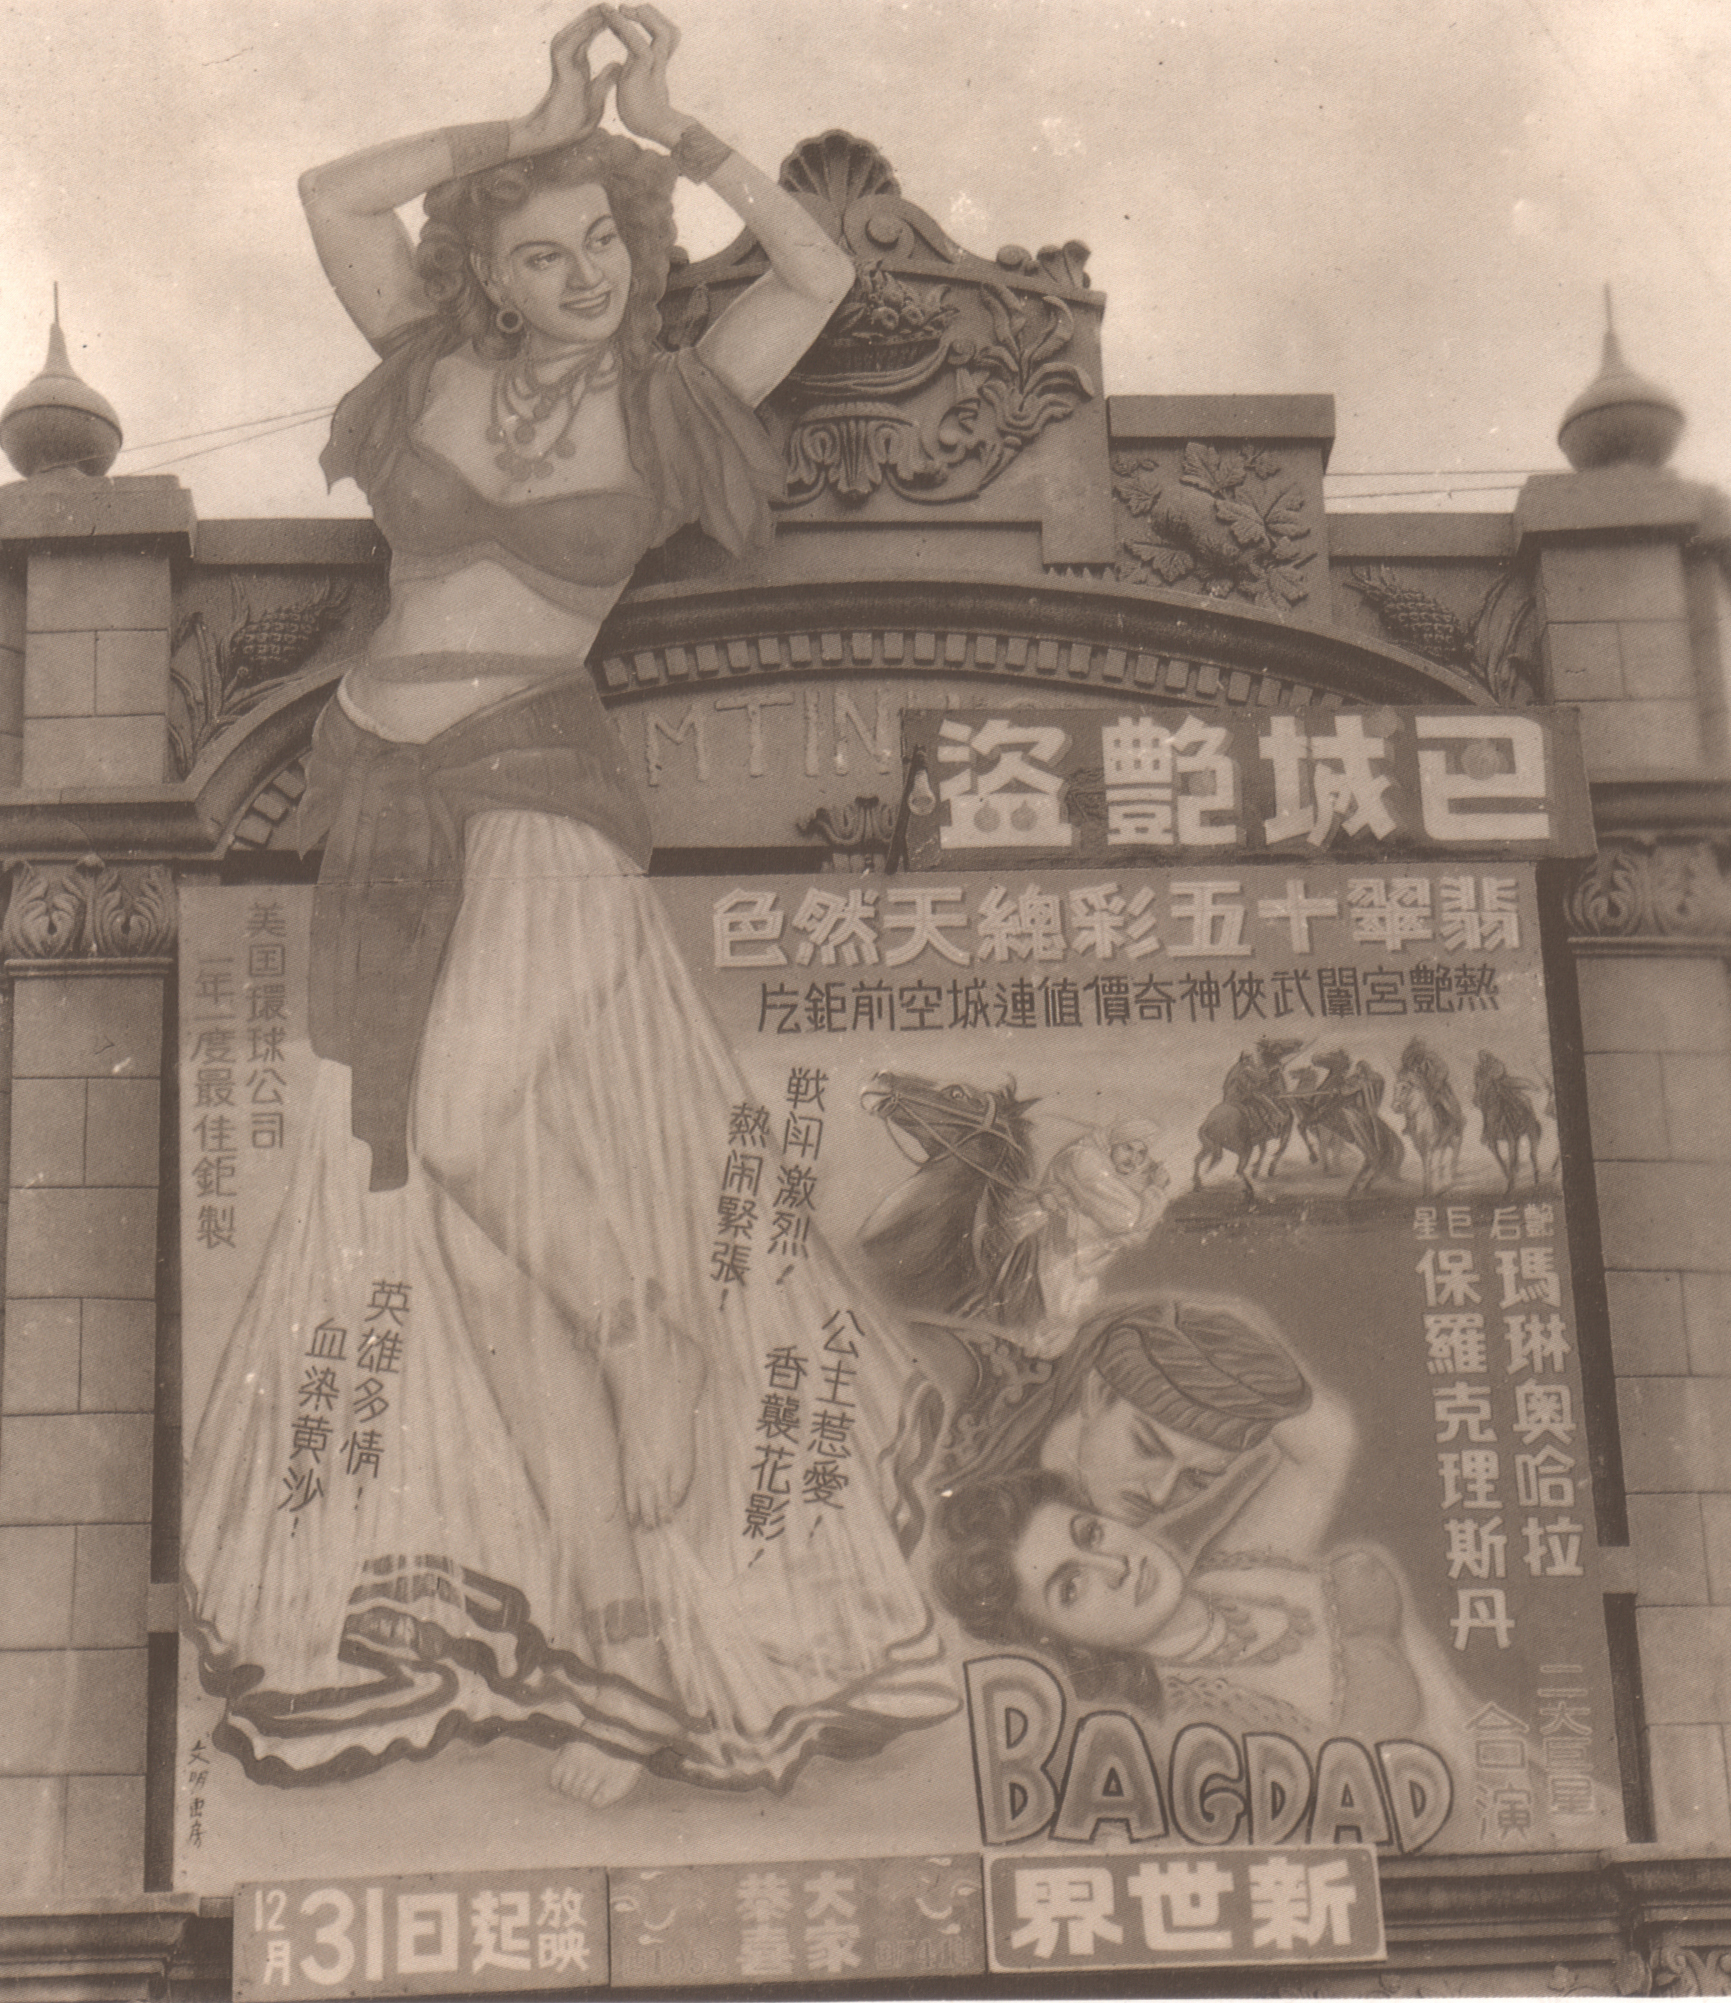 新竹老戲院的海報看板